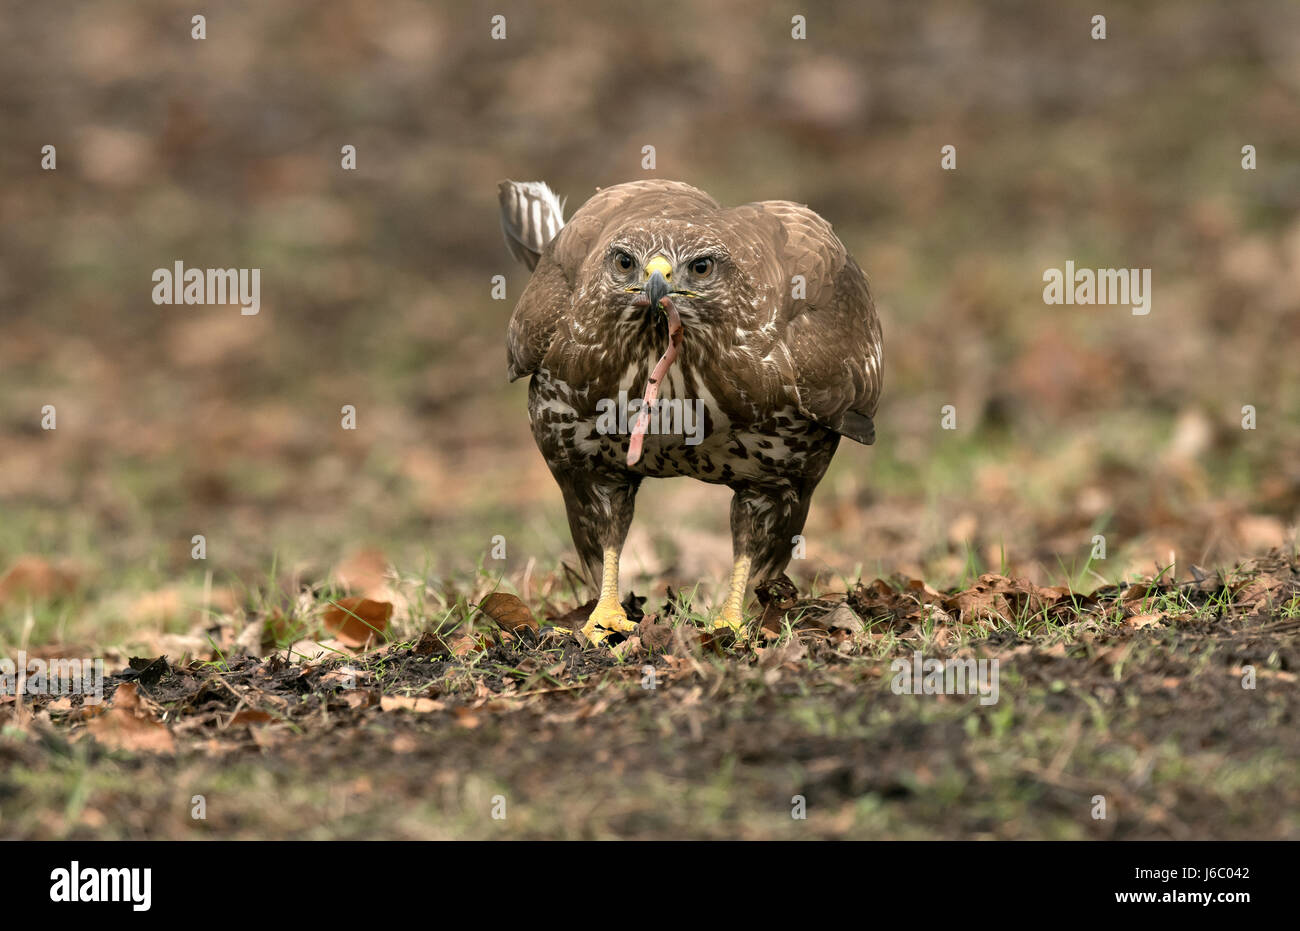 Common Buzzard - Buteo buteo Stock Photo